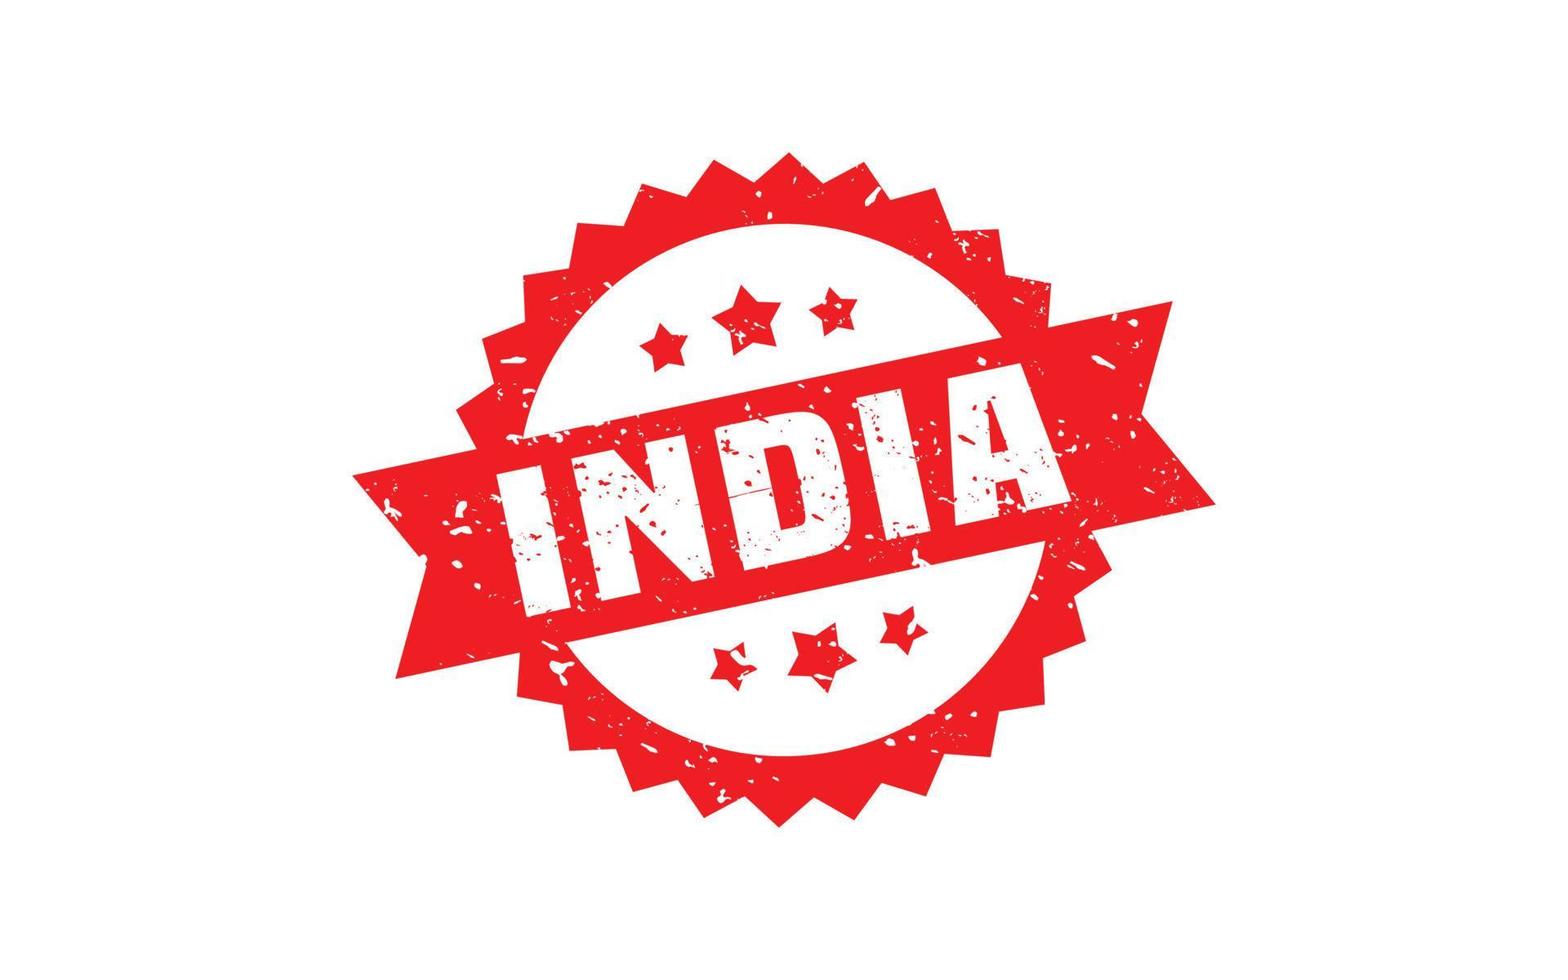 Indië postzegel rubber met grunge stijl Aan wit achtergrond vector